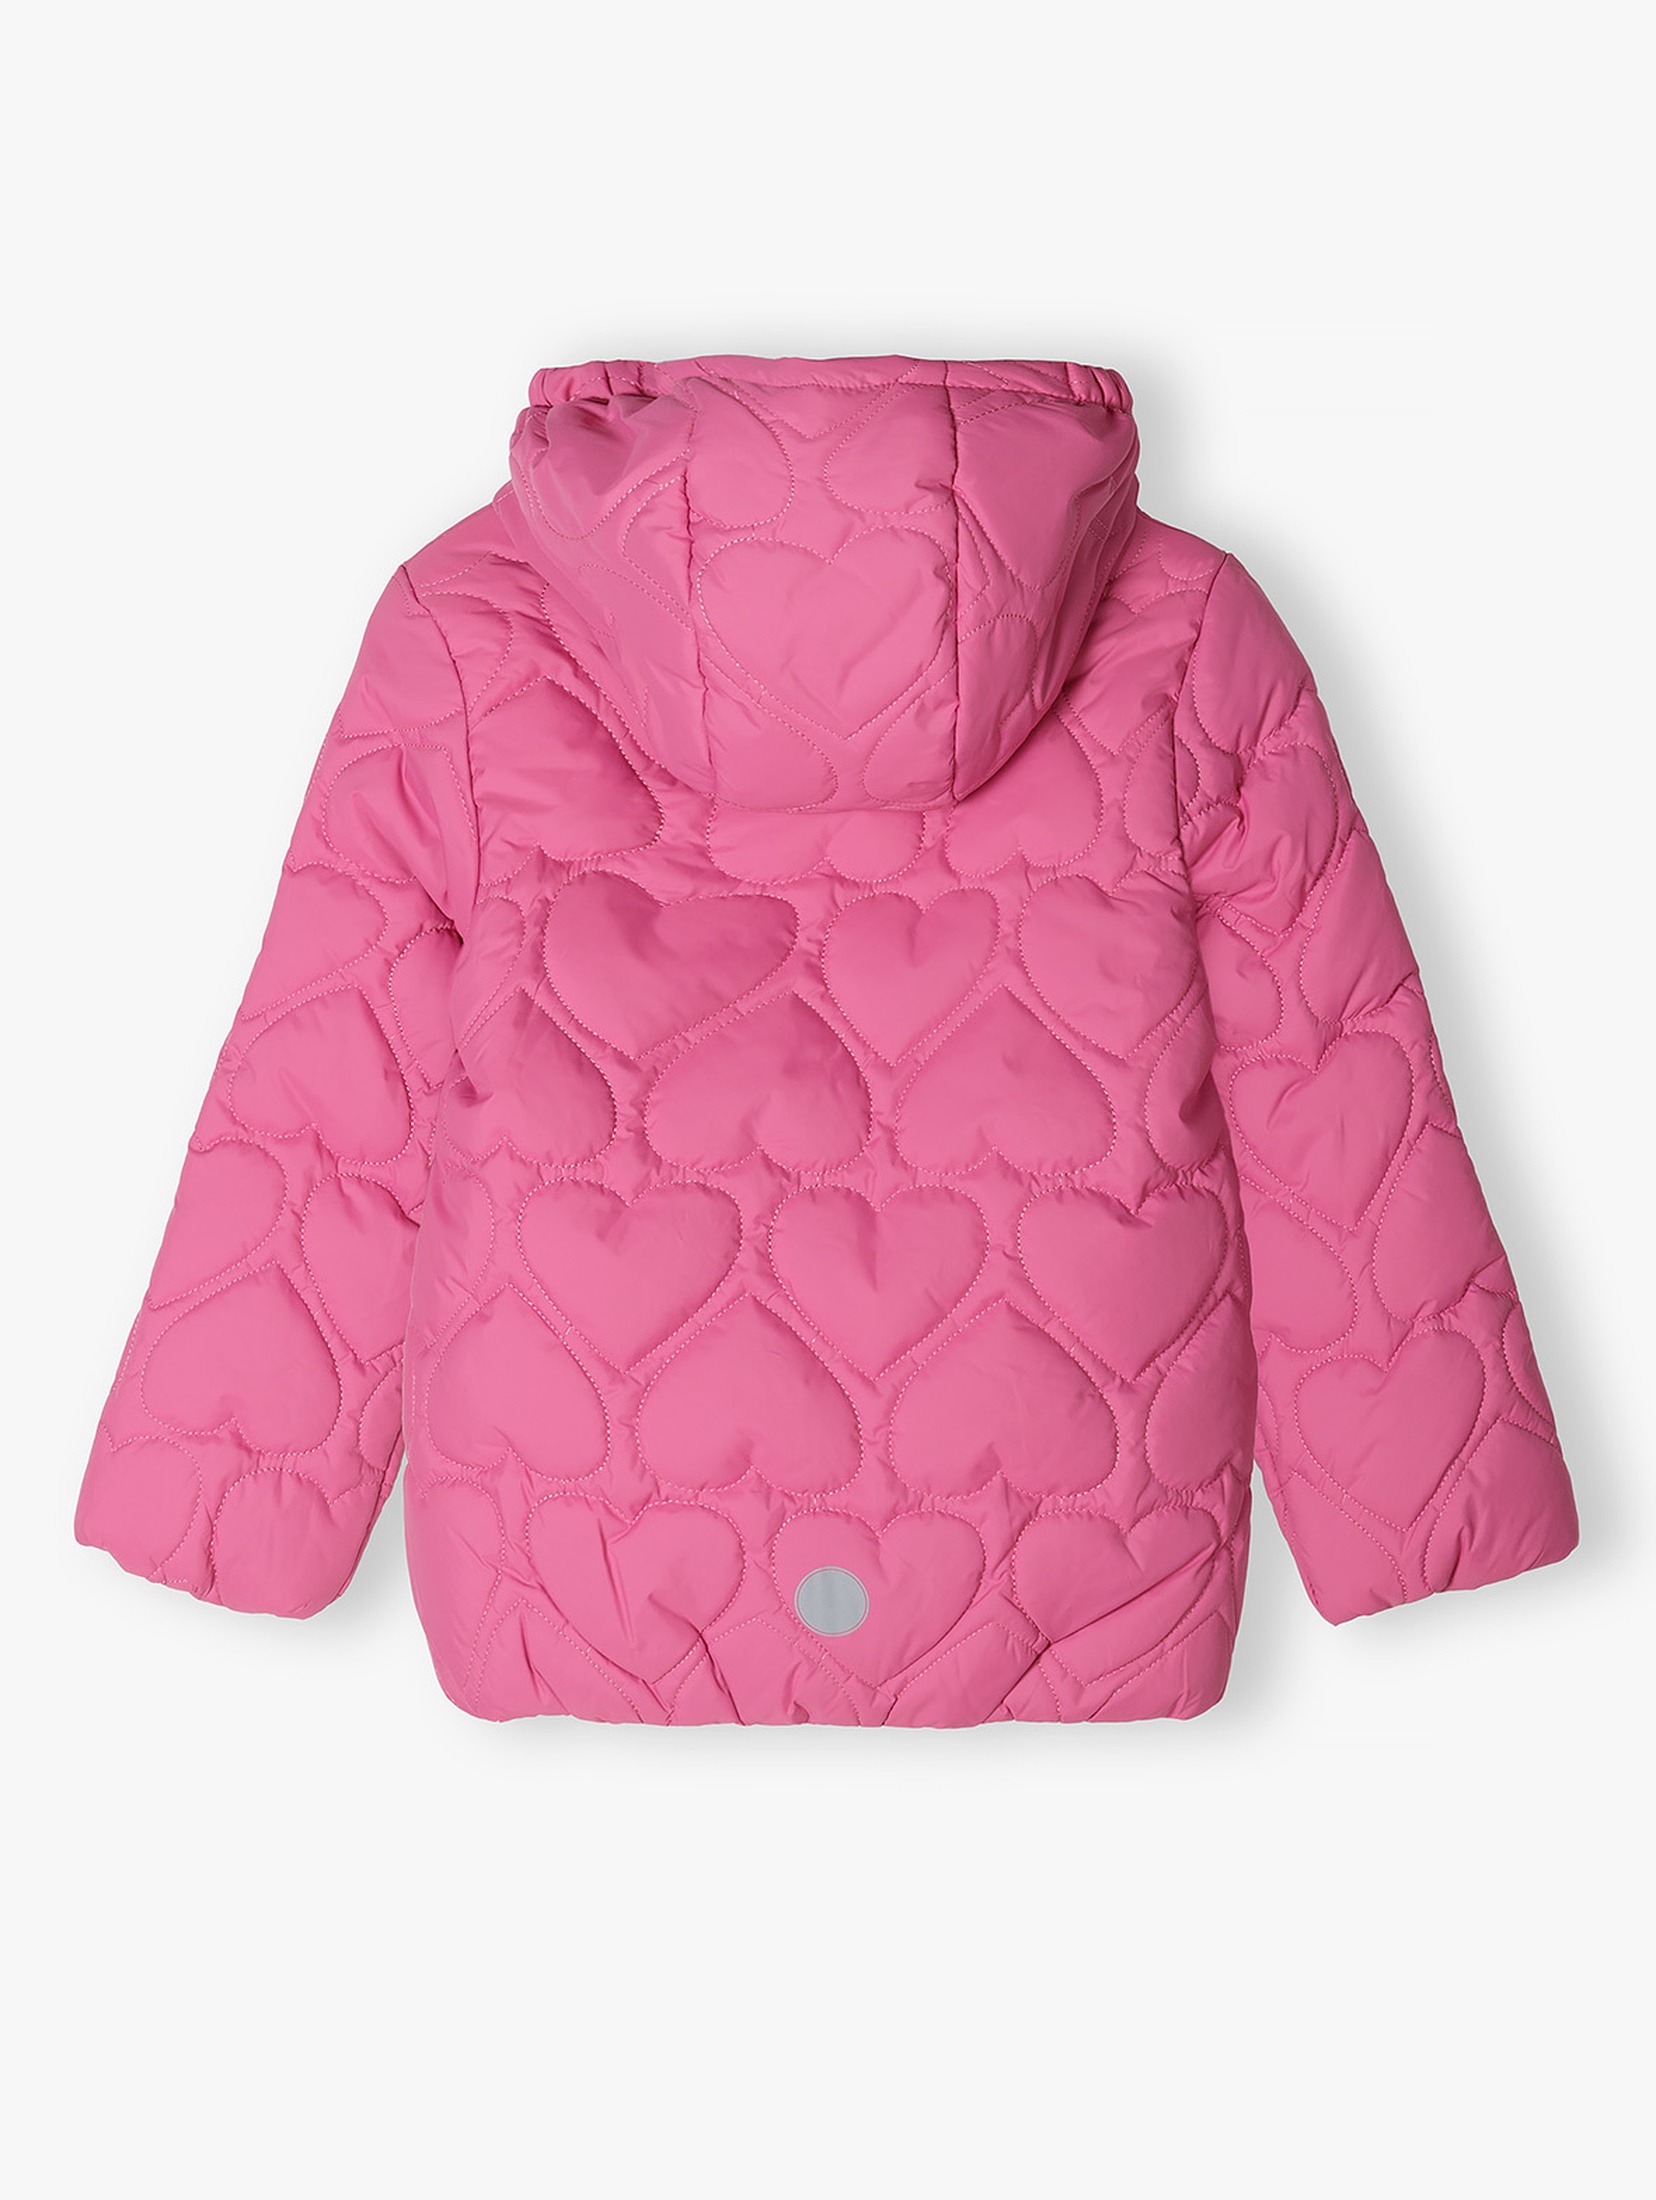 Przejściowa kurtka dziewczęca pikowana - różowa w serduszka